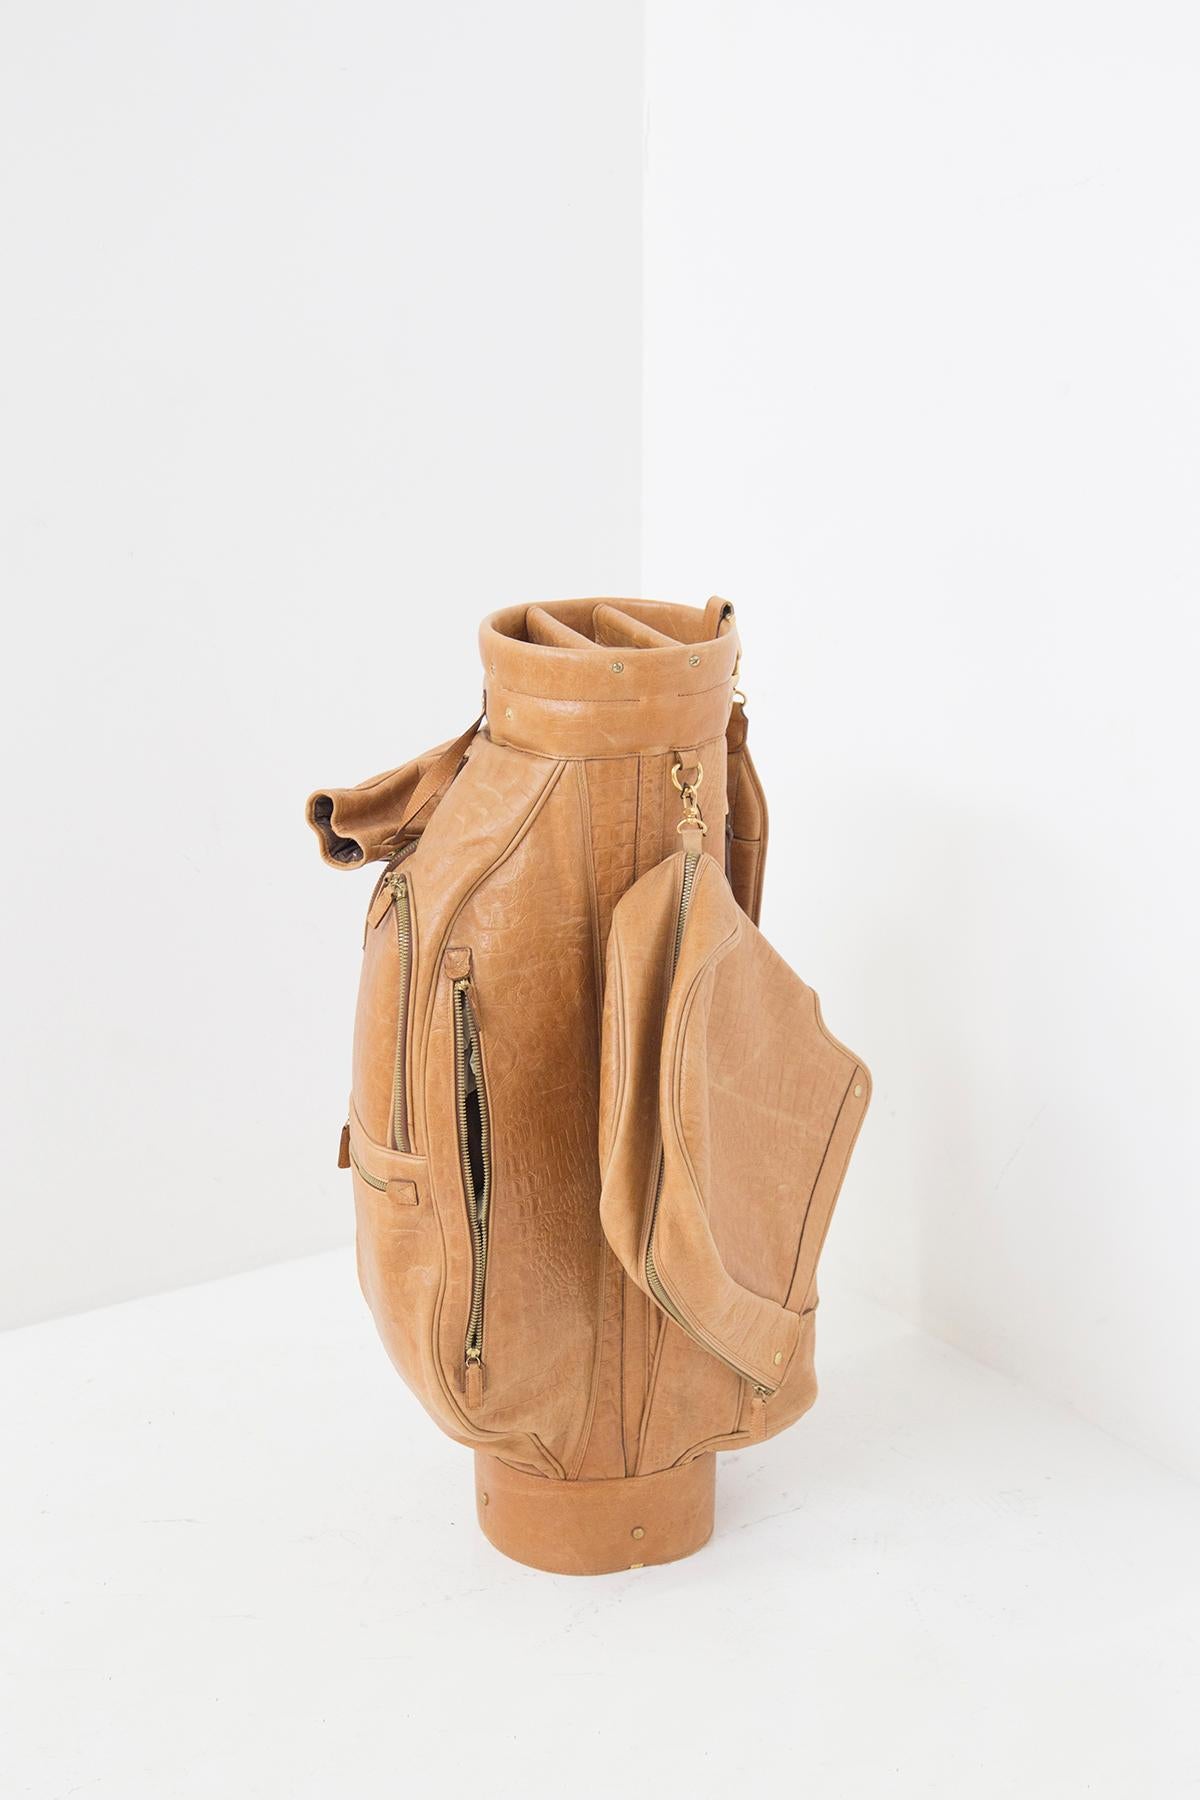 Eine schöne Golftasche für Golfschläger, die in den 1970er Jahren aus feinster italienischer Fertigung stammt.
Die Tasche ist aus kamelfarbenem Reptilienlederimitat gefertigt, das einfach fantastisch ist.
Die Tasche hat viele Fächer und Zubehör. Der